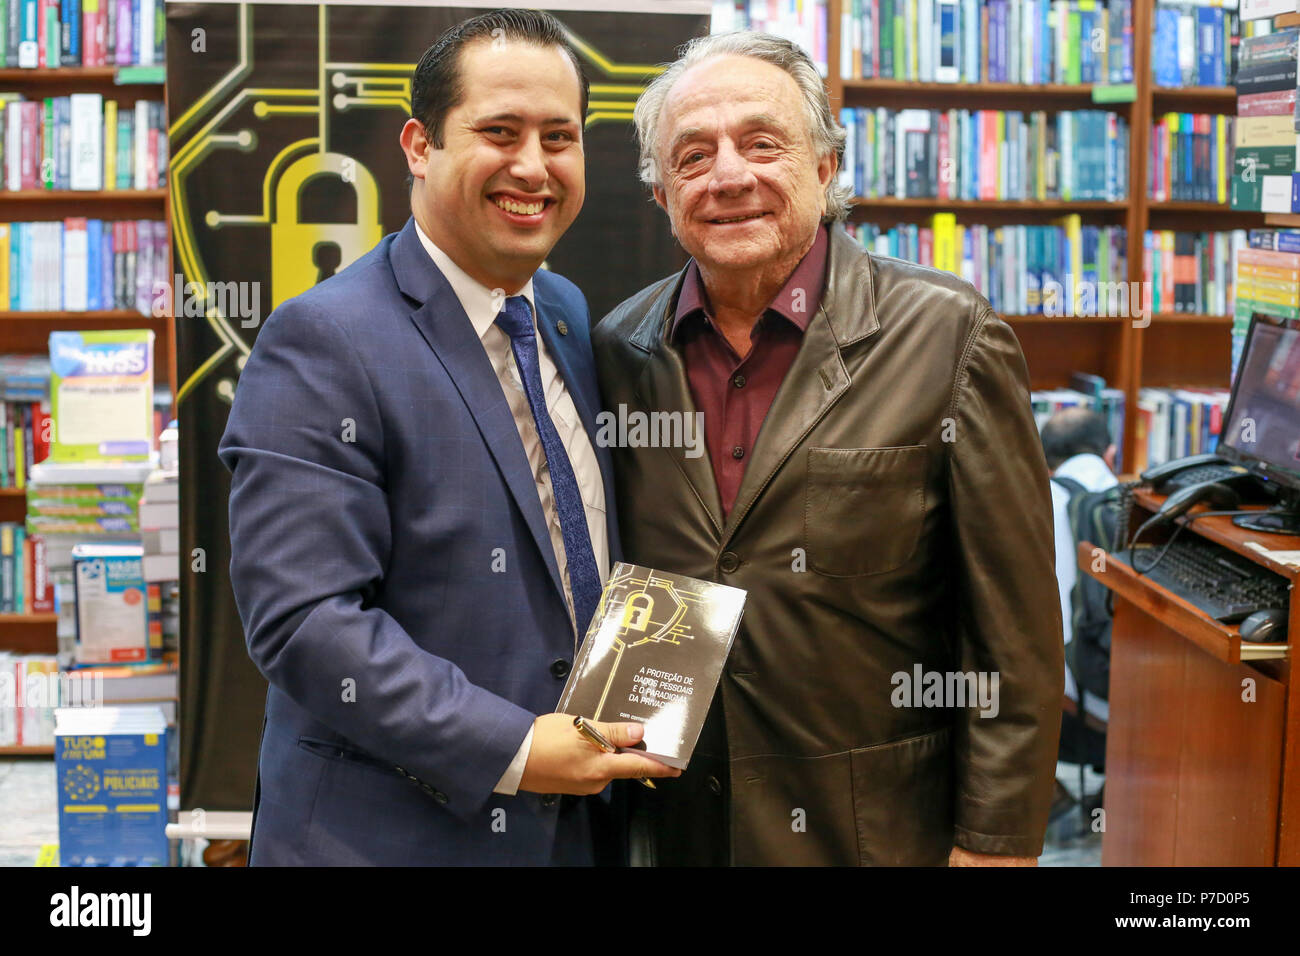 Leandro Alvarenga Miranda launches his new book at Martins Fontes bookstore in Sao Paulo. (Photo by Leco Viana/Thenews2 / Pacific Press) Stock Photo